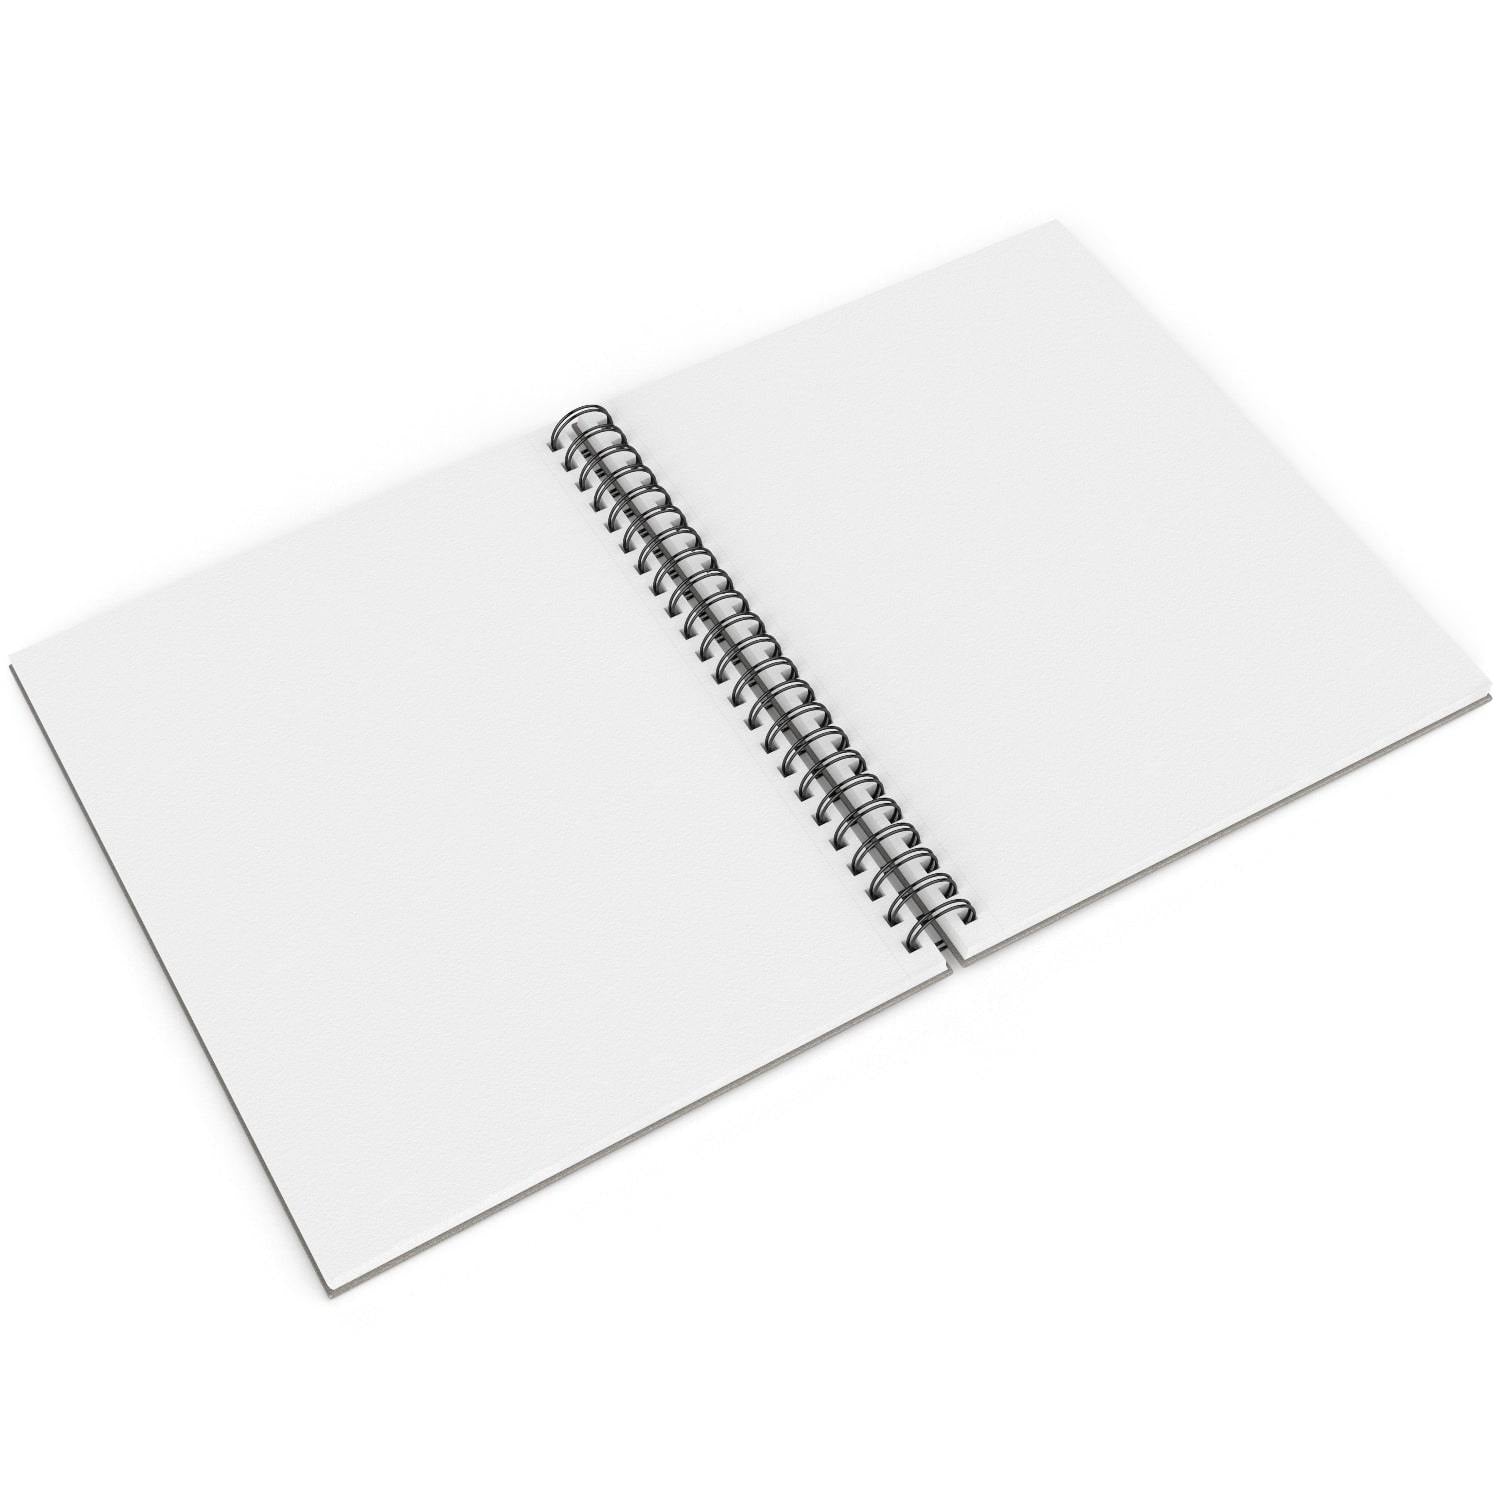 Artecho Sketch Book 9 x 12 Inch, 100 Sheets 90gsm, Pack of 2, Spiral  Sketchbook, Hardcover Sketchbook, Acid Free Sketch Paper, Sketch Pad,  Sketchbook